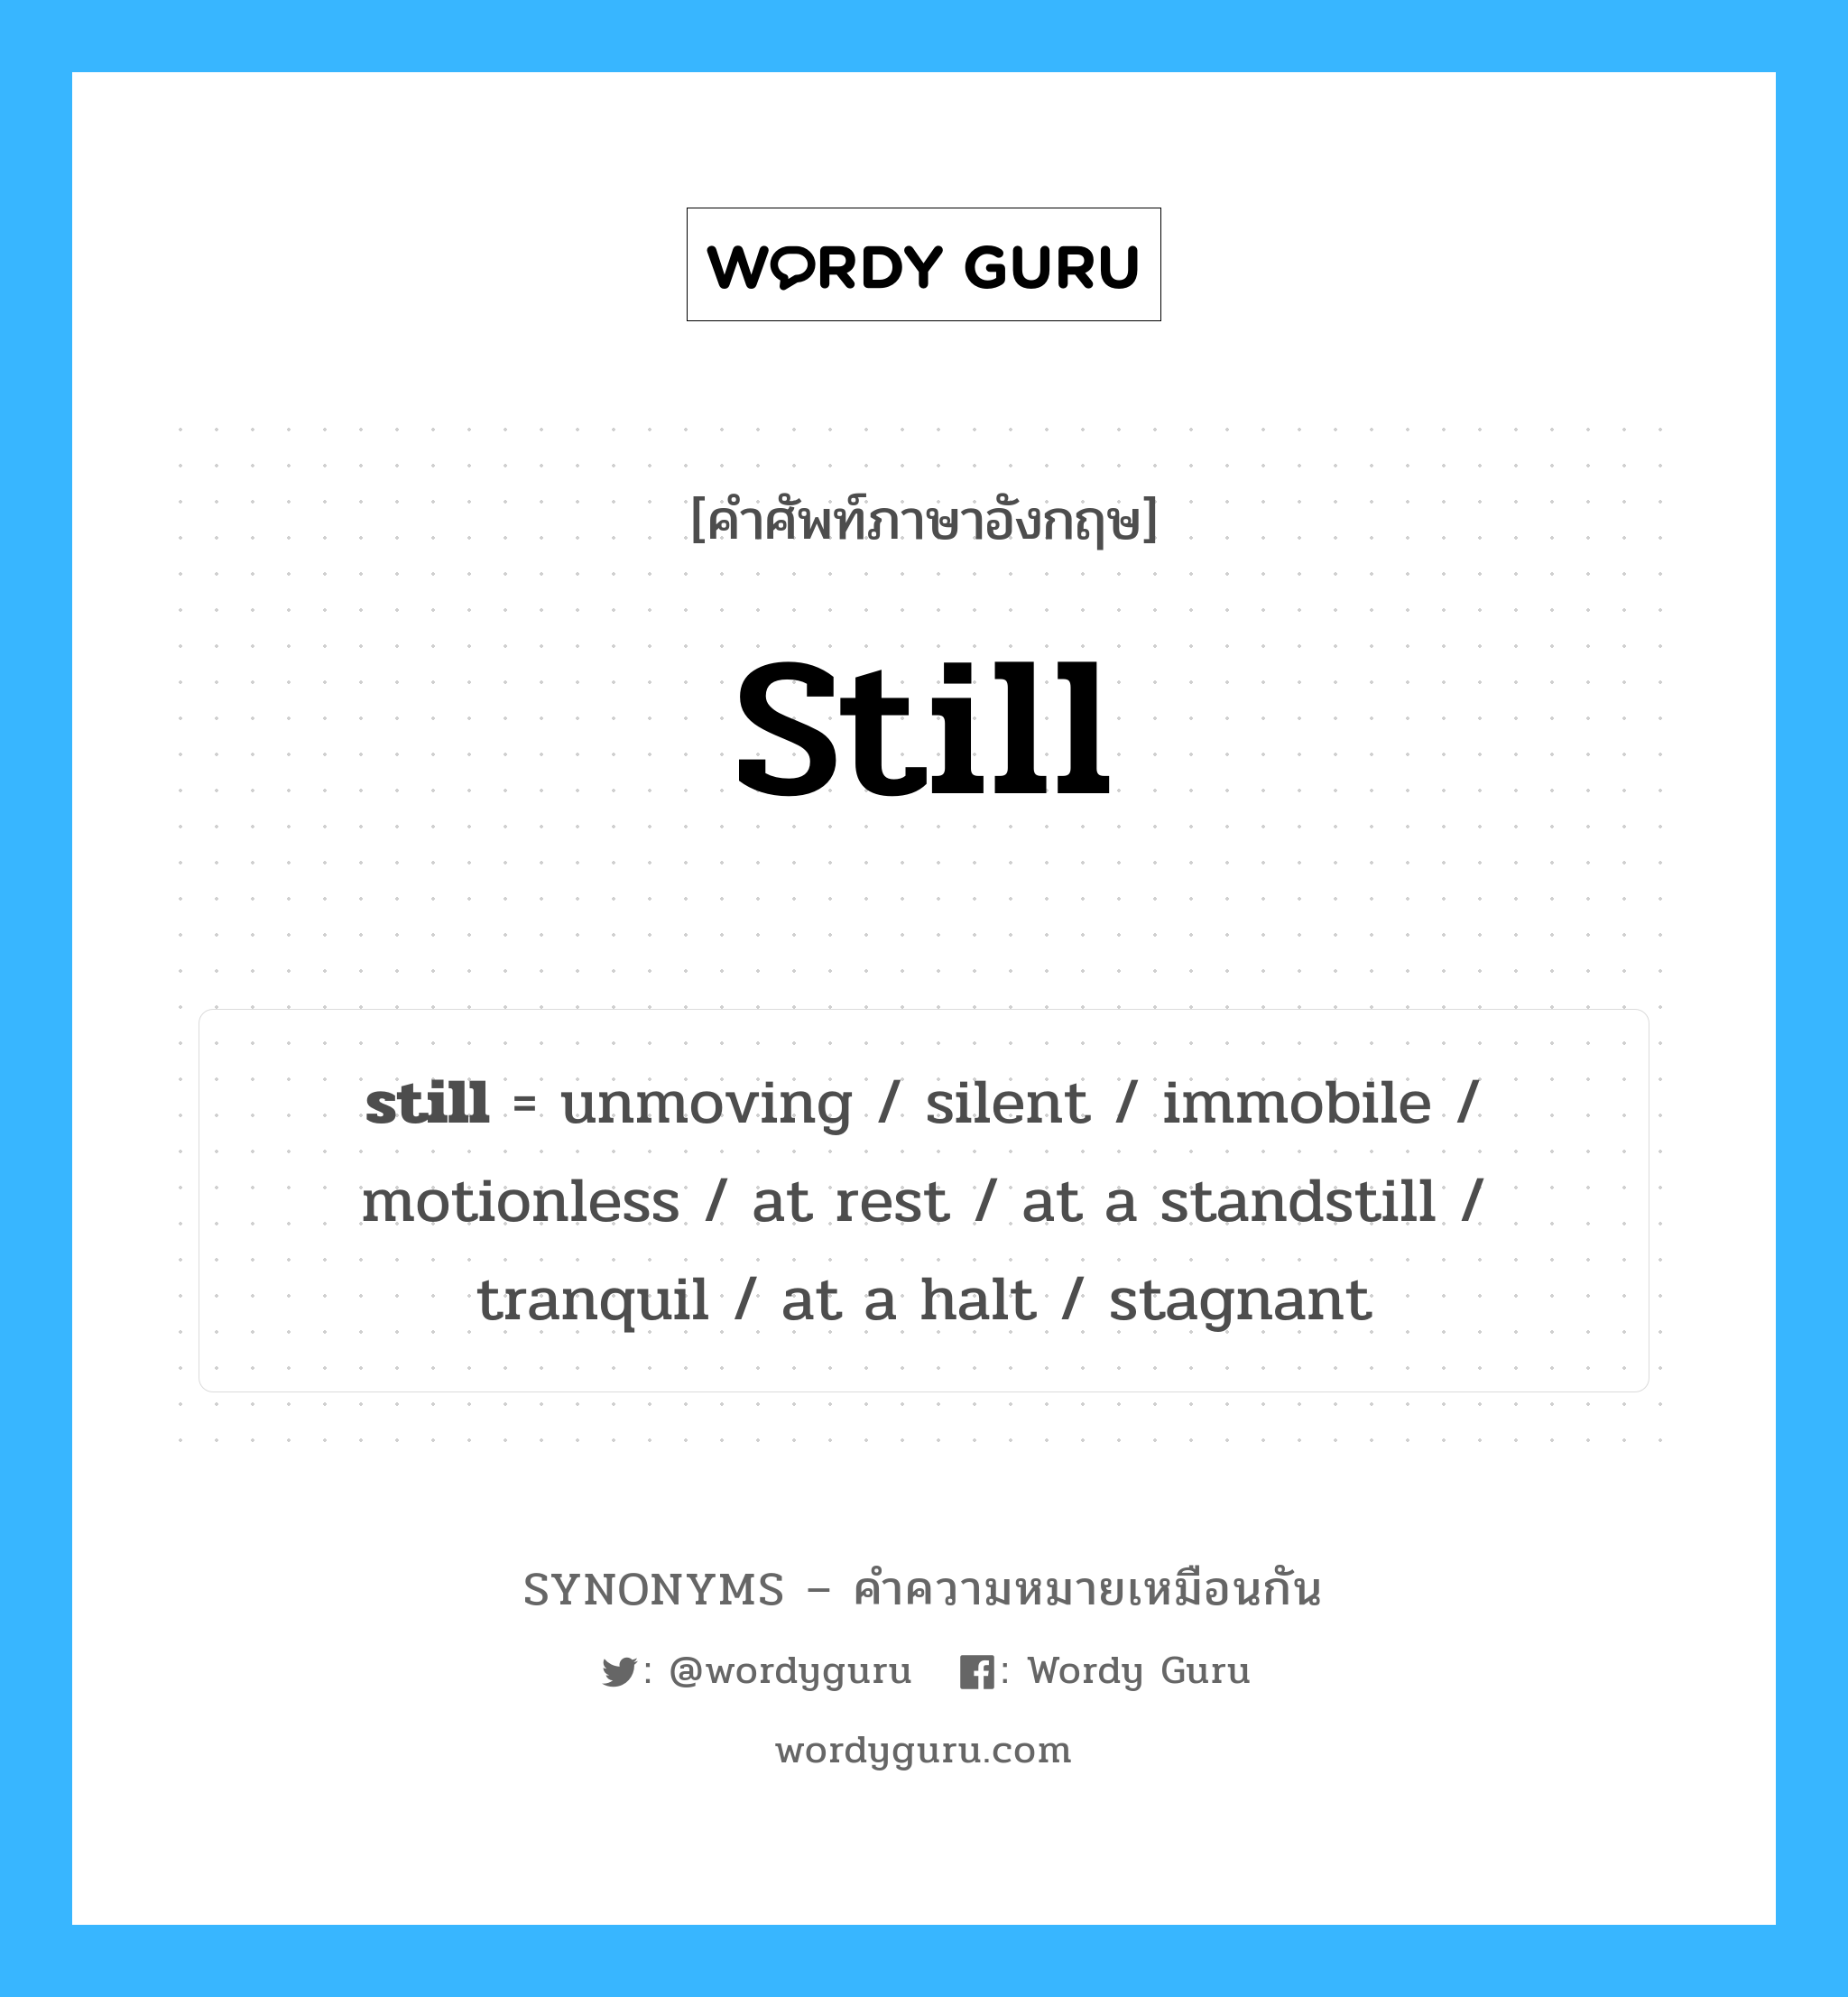 silent เป็นหนึ่งใน still และมีคำอื่น ๆ อีกดังนี้, คำศัพท์ภาษาอังกฤษ silent ความหมายคล้ายกันกับ still แปลว่า ไม่มีเสียง หมวด still